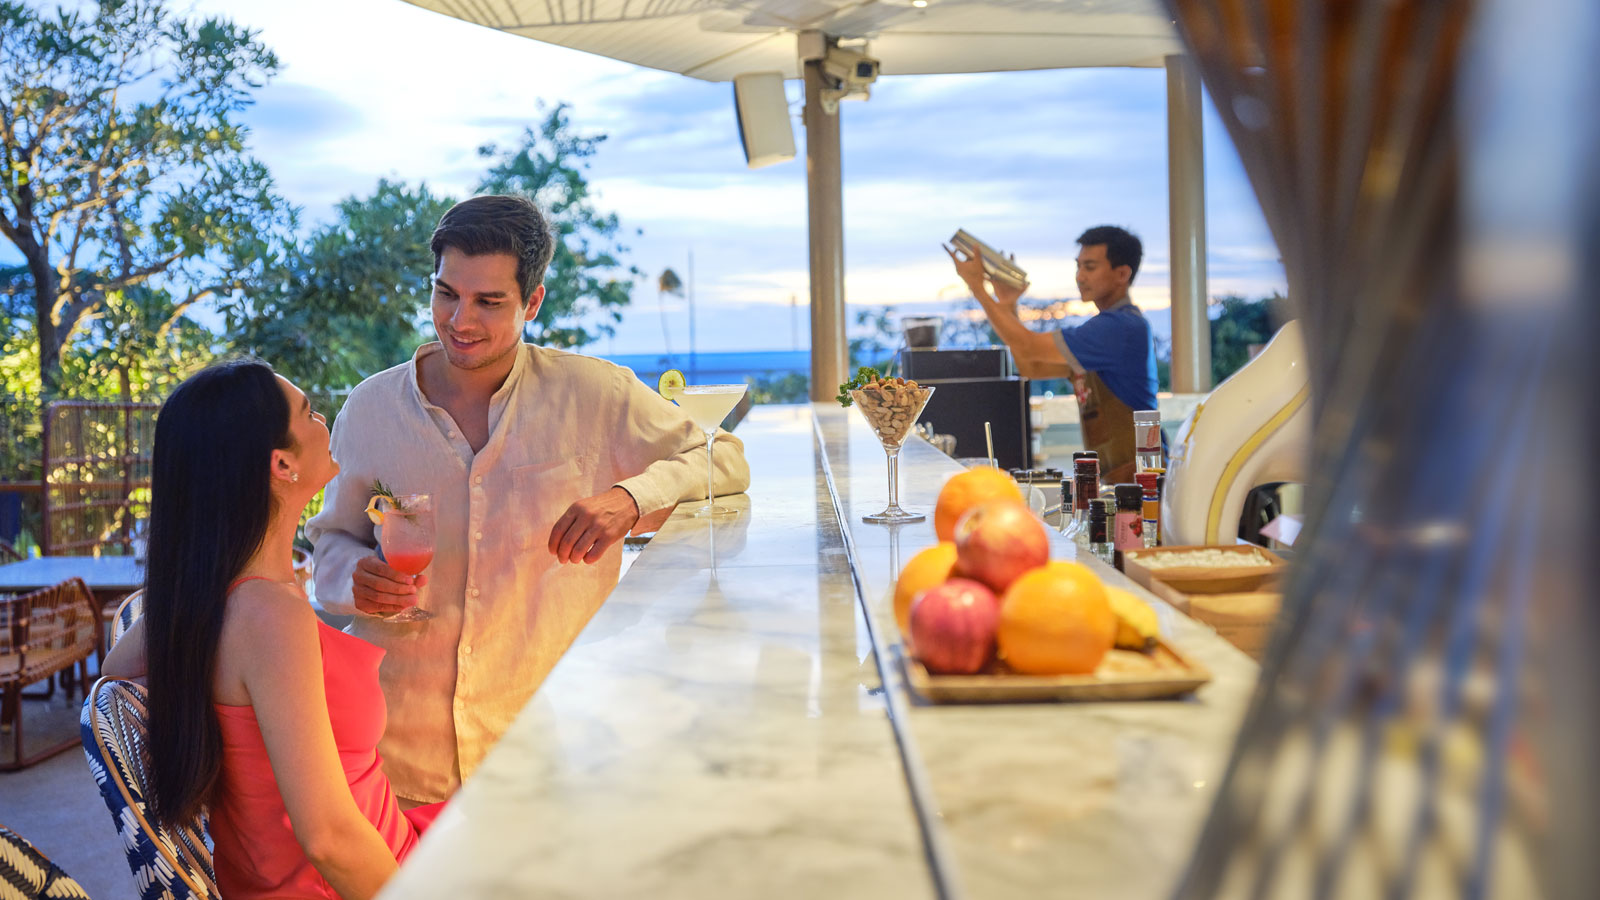 Drinks at Aqua Eatery & Bar - أماري المحيط باتايا